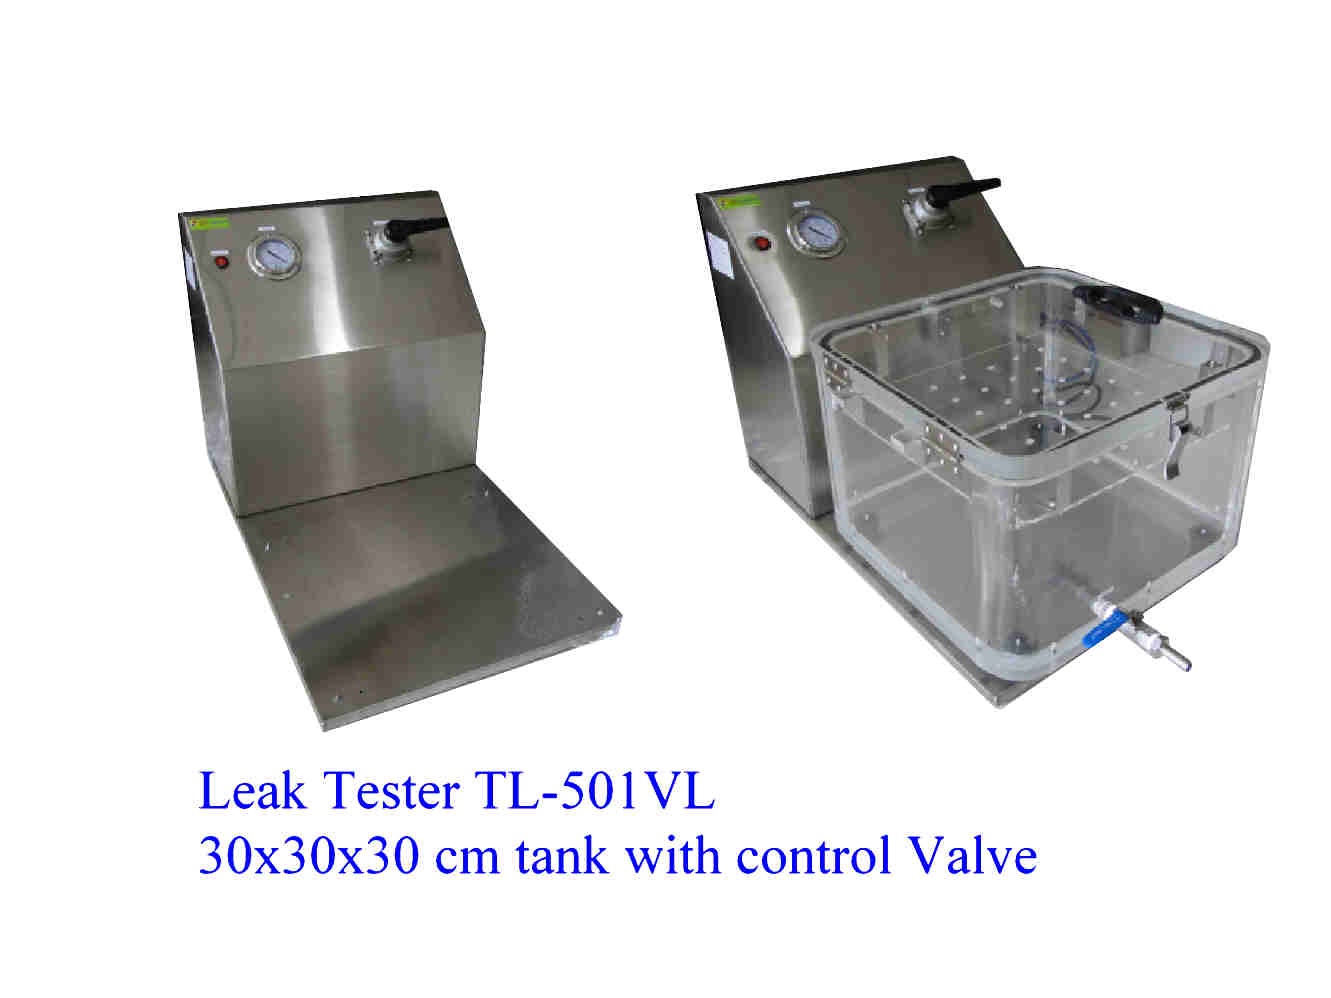 เครื่องทดสอบการรั่วบรรจุภัณฑ์ Test Leak Analog Gauge valve type รุ่น TL-501VL